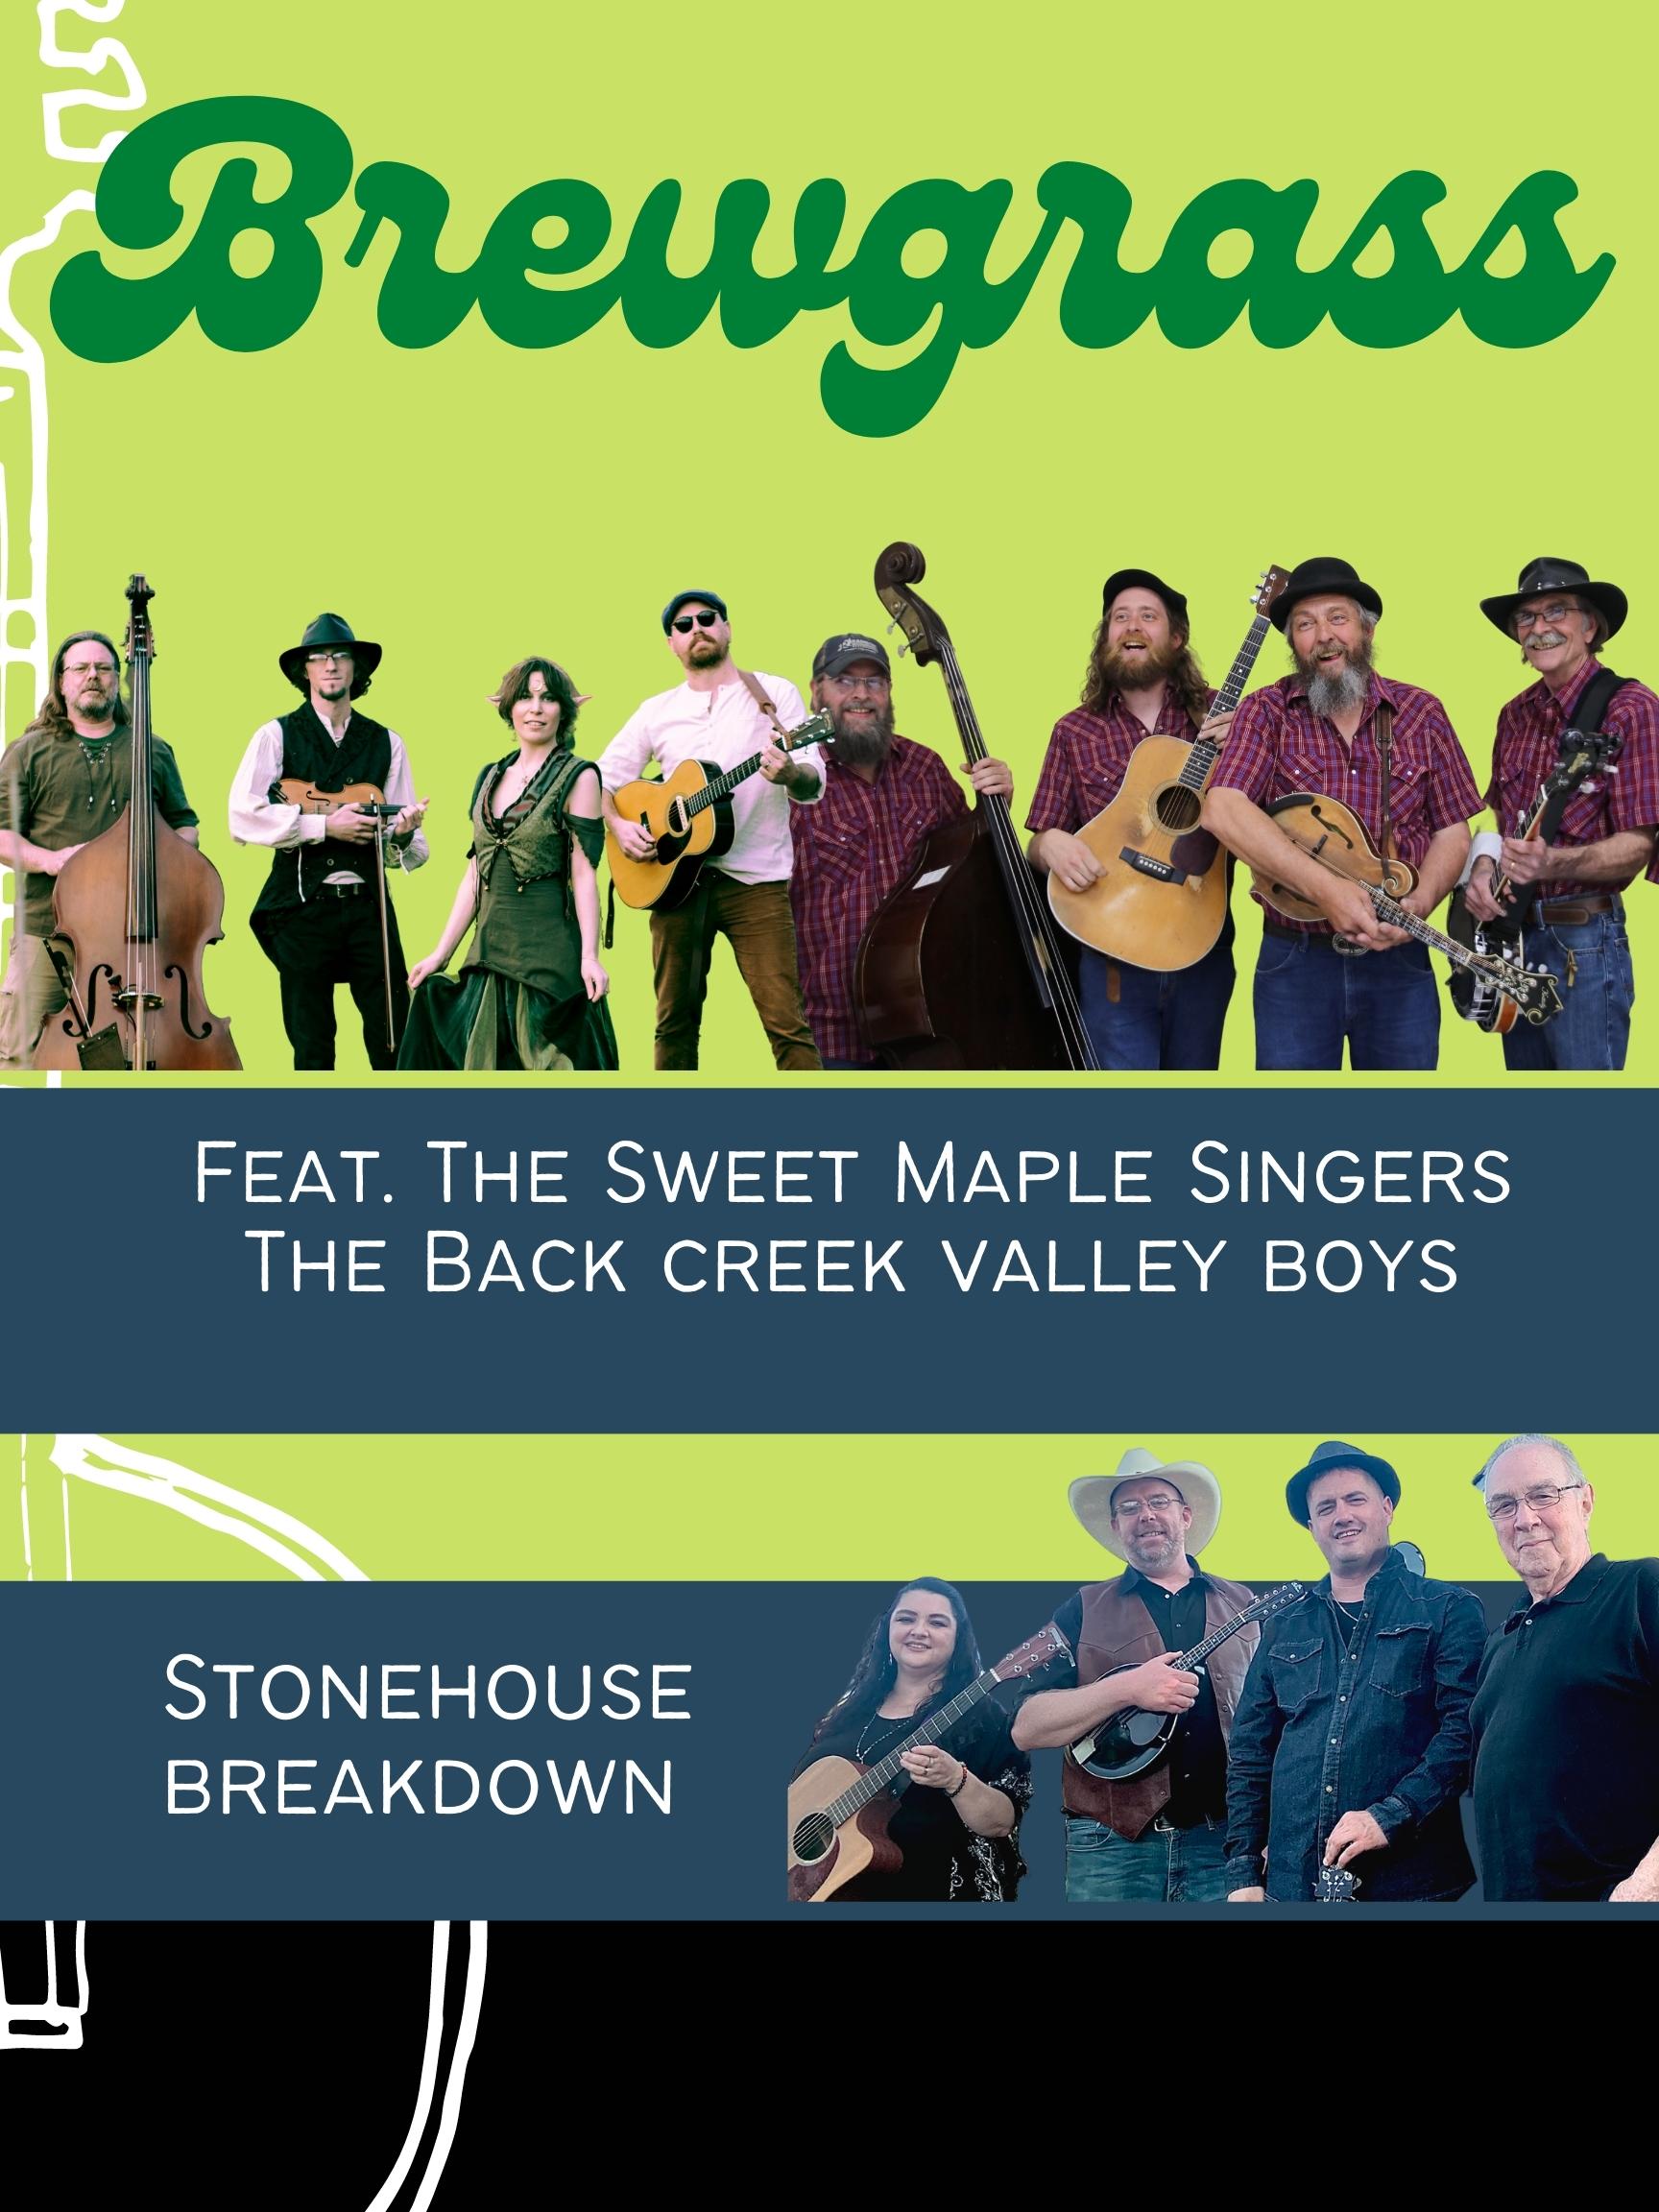 Brewgrass: An Evening of Bluegrass & Folk Music